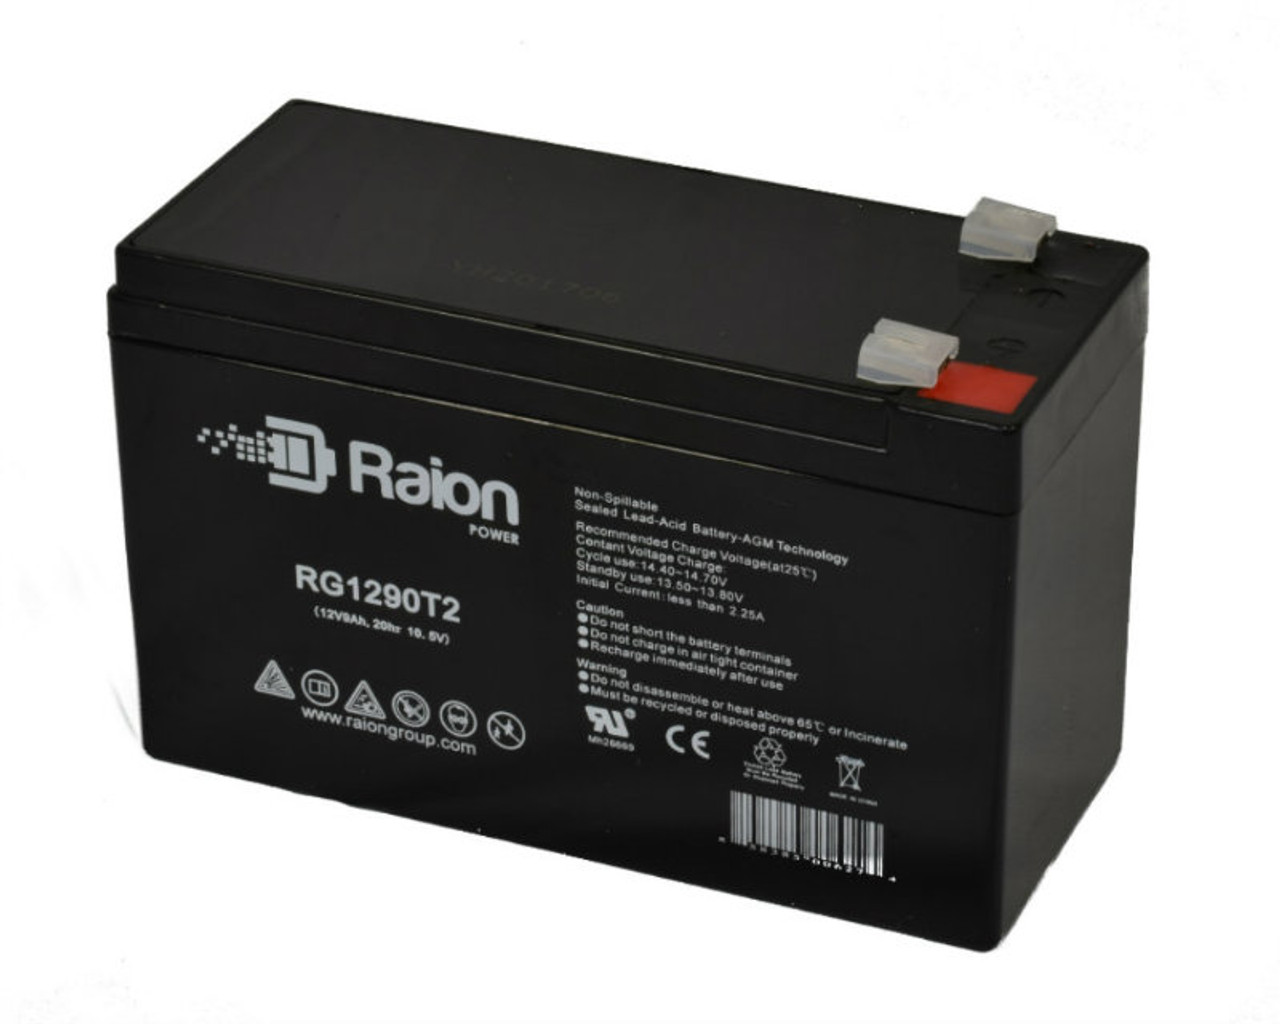 Raion Power RG1290T2 12V 9Ah AGM Battery for Tennis Tutor Prolite Plus